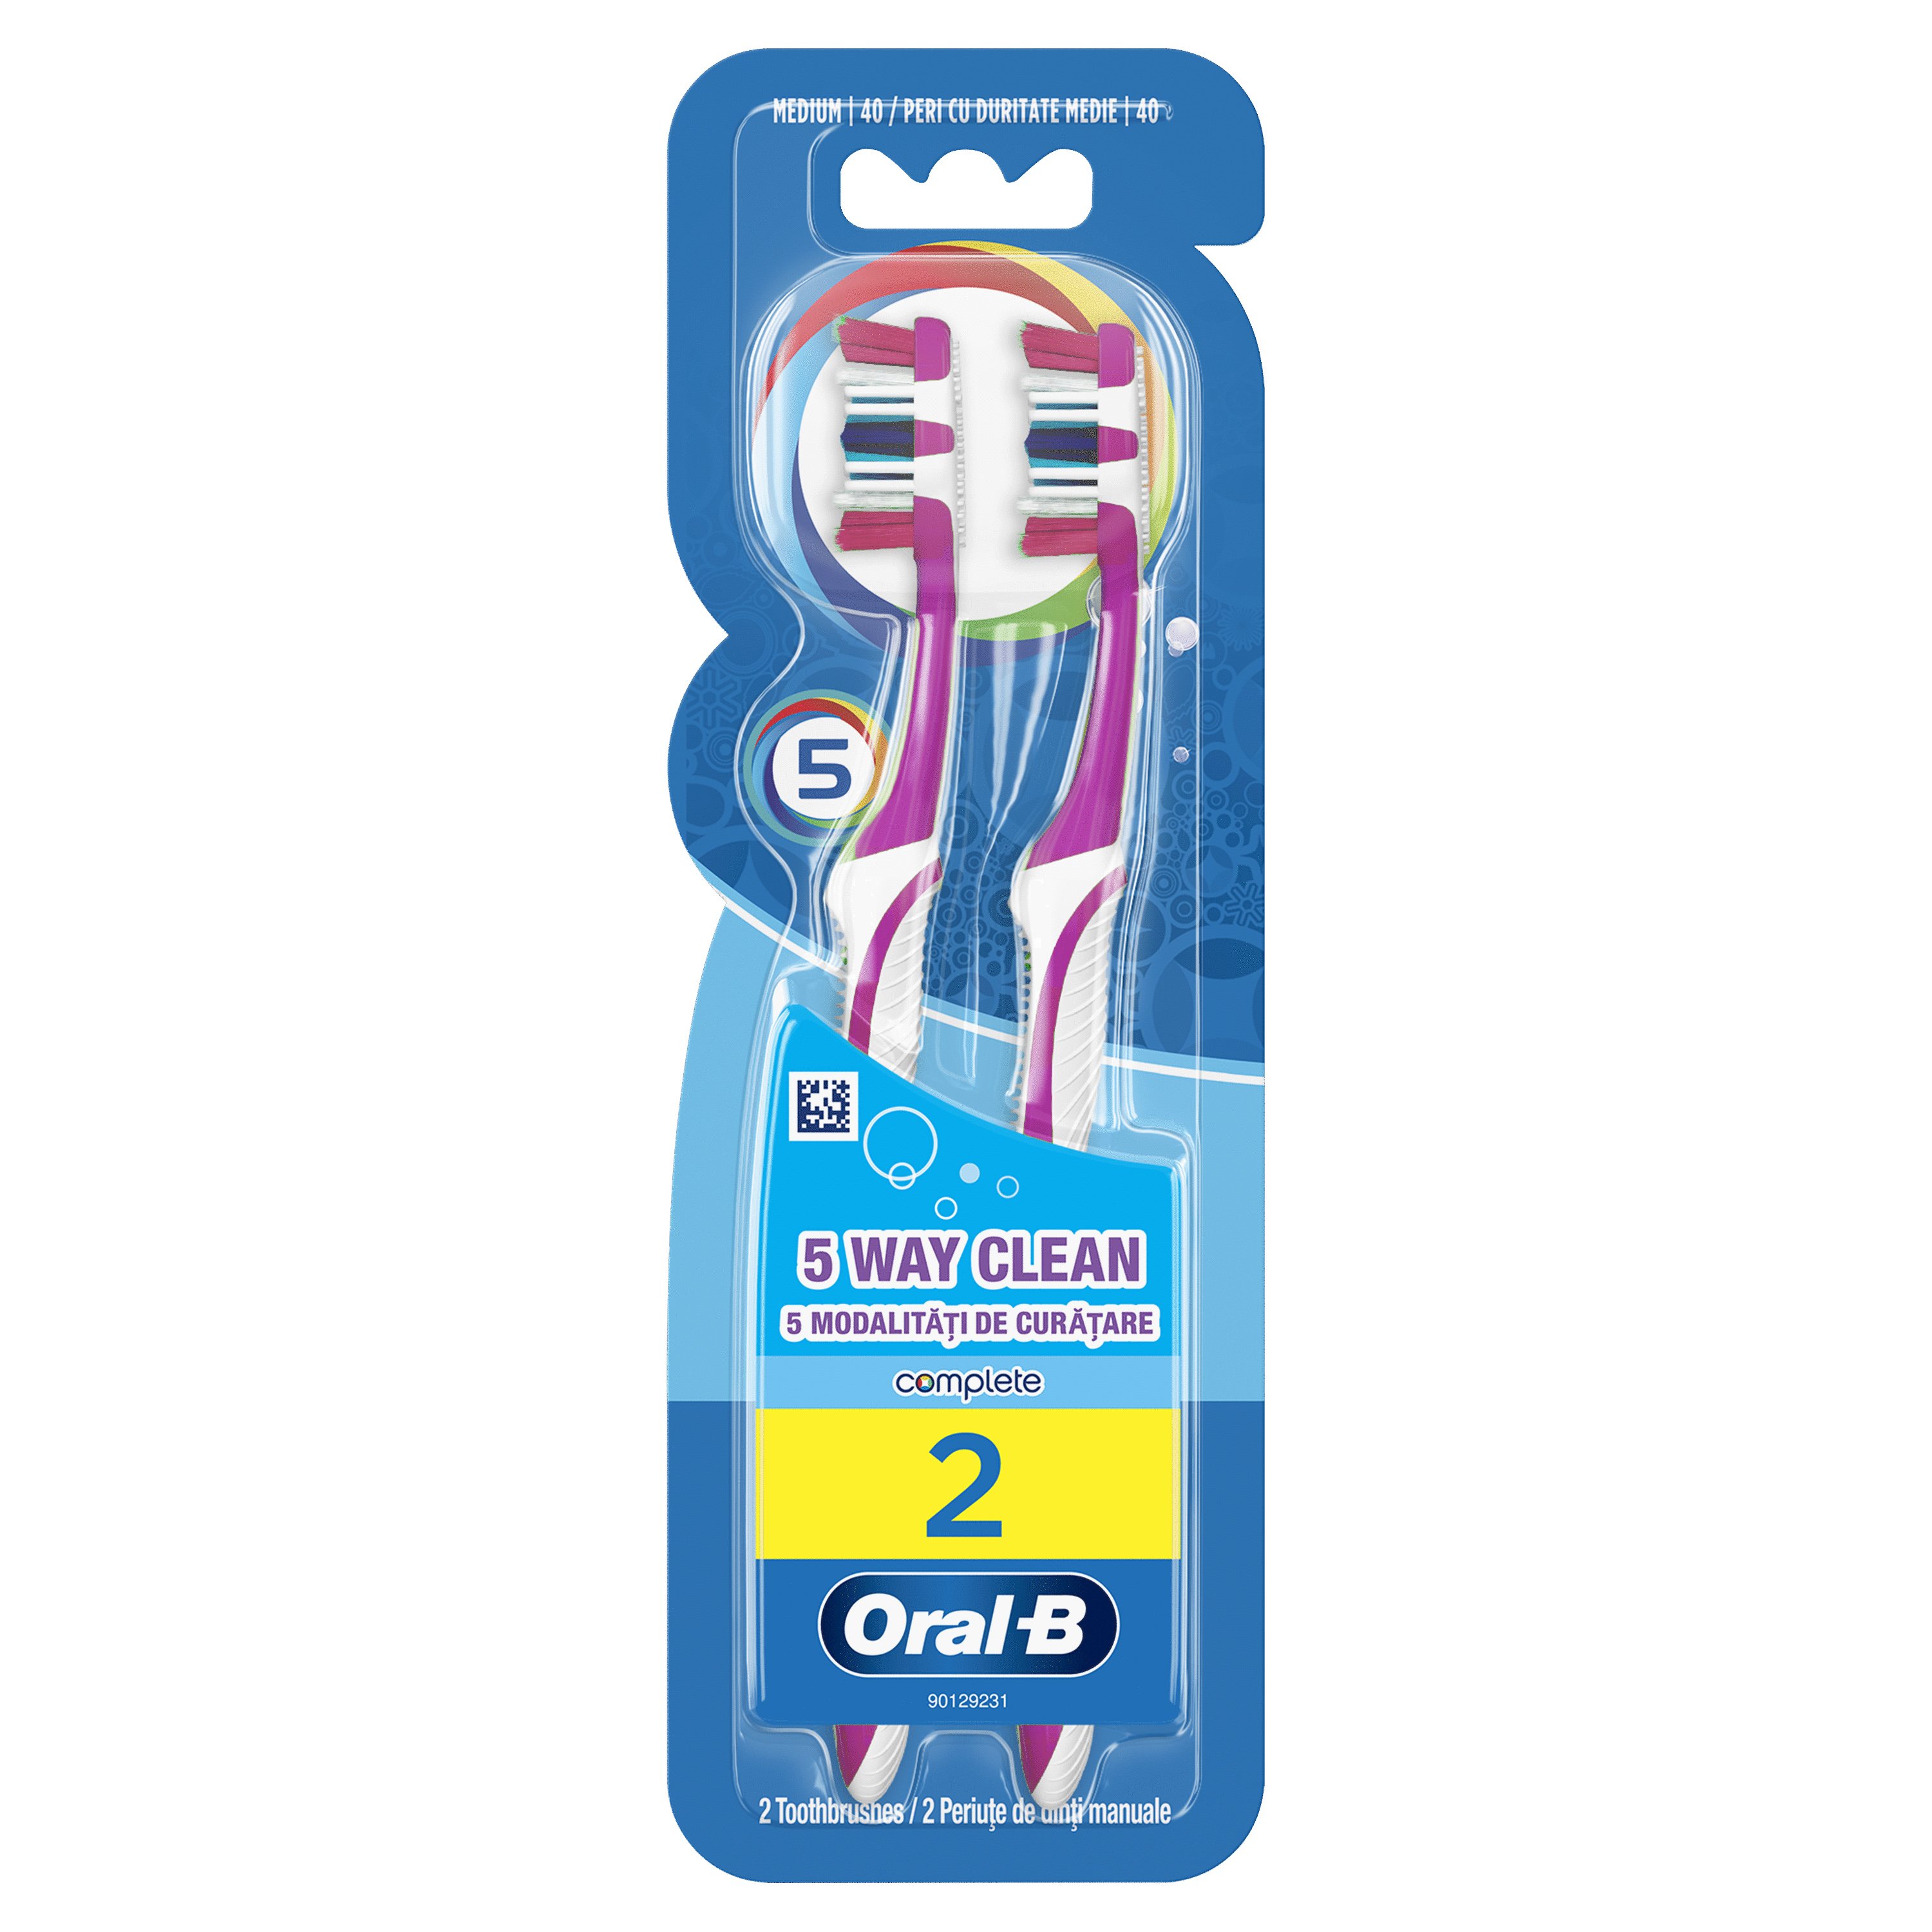 Oral-B Complete 5 Way Clean Οδοντόβουρτσα 40 Μέτρια 1+1 δώρο – Μωβ – Μωβ